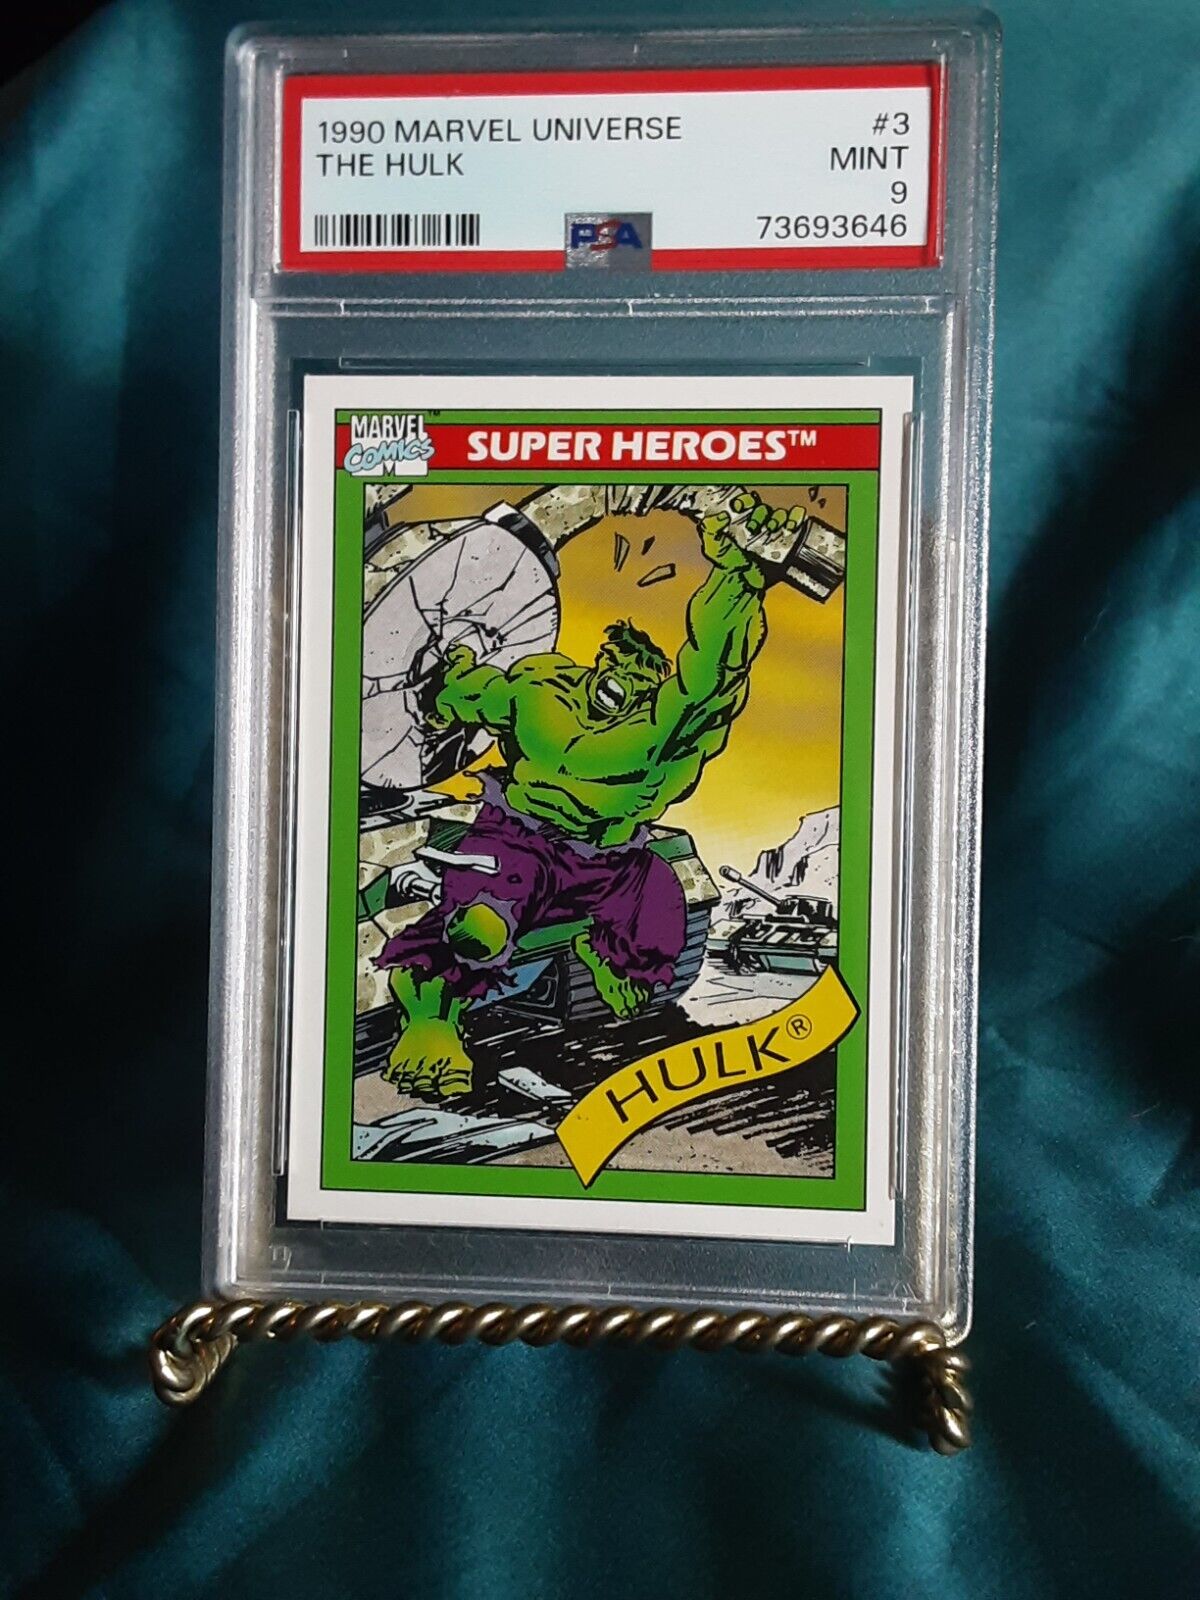 1990 Impel Marvel Universe #3 The Hulk PSA 9 MINT